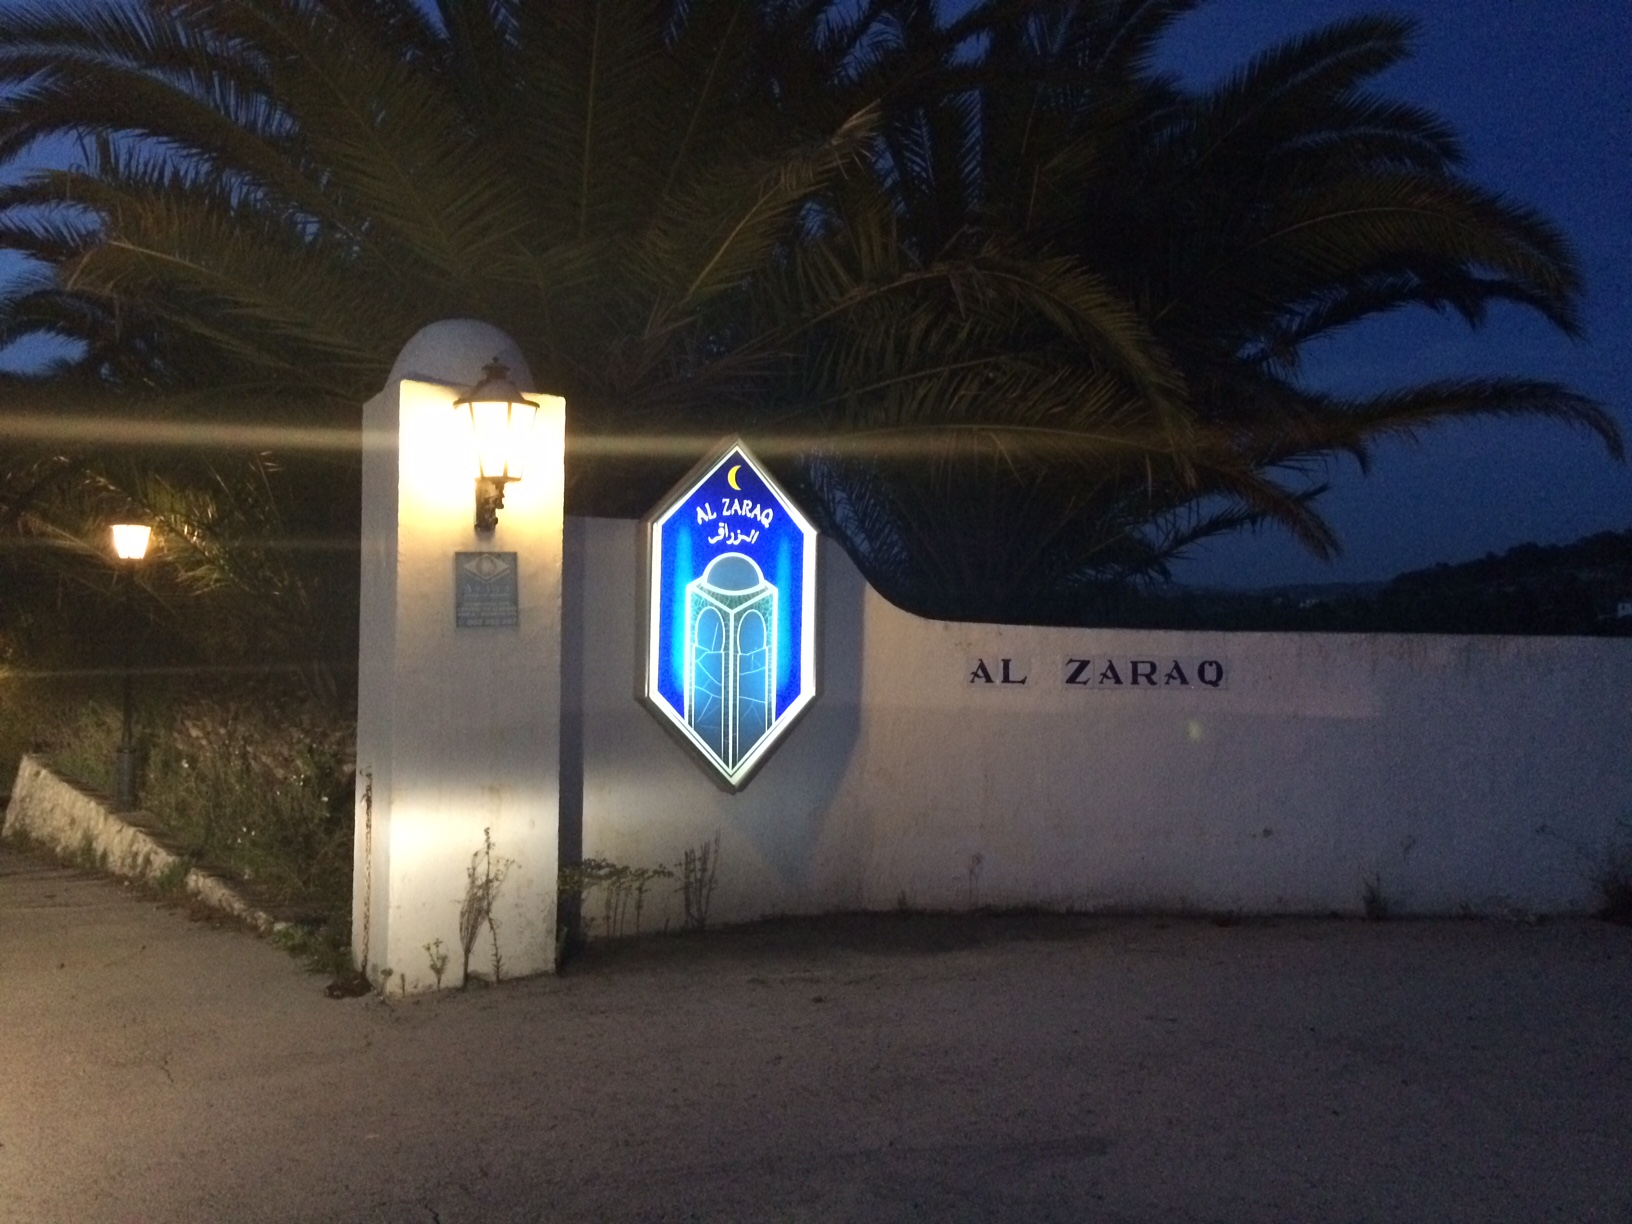 Entrada al restaurante libanés Al-Zaraq, en Benissa